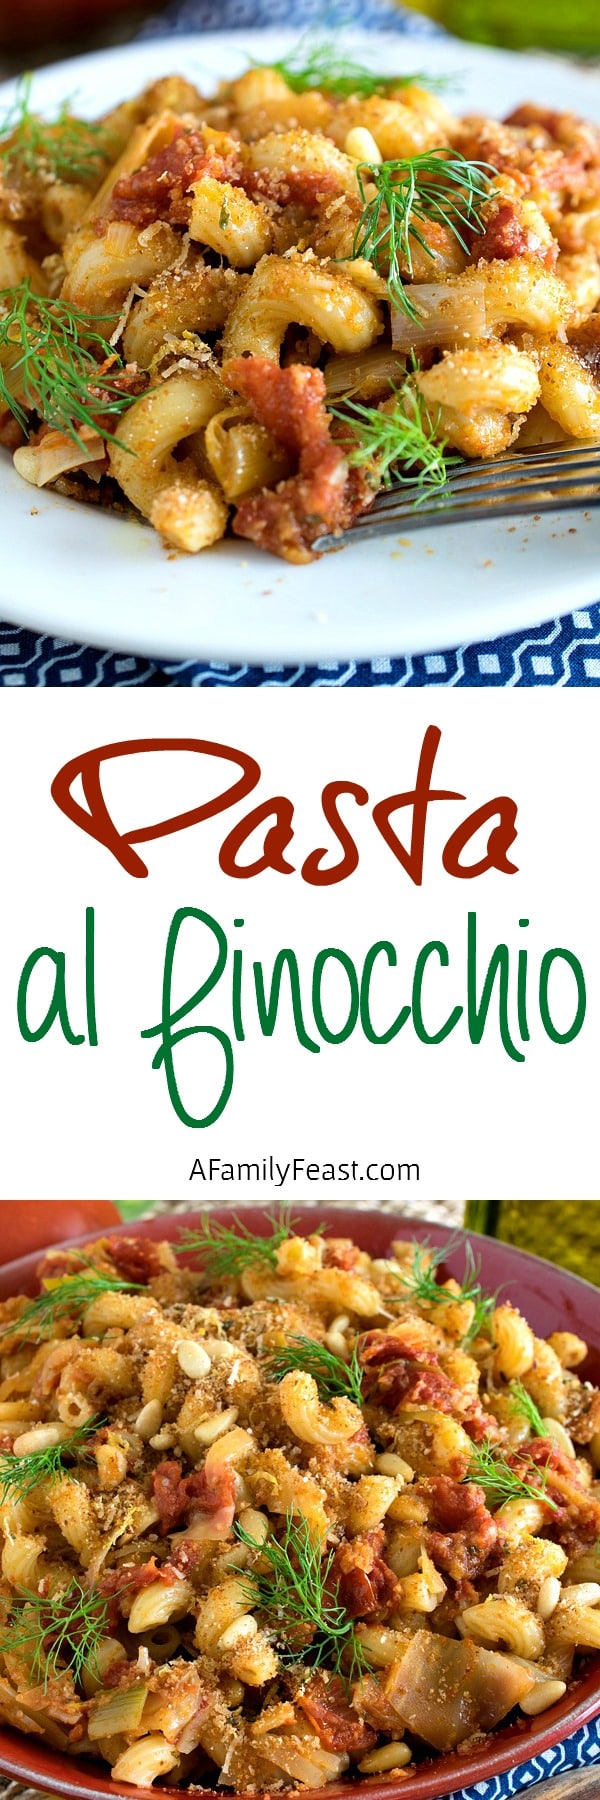 Pasta al Finocchio (Pasta with Fennel) - A simple pasta dish with fantastic flavors!